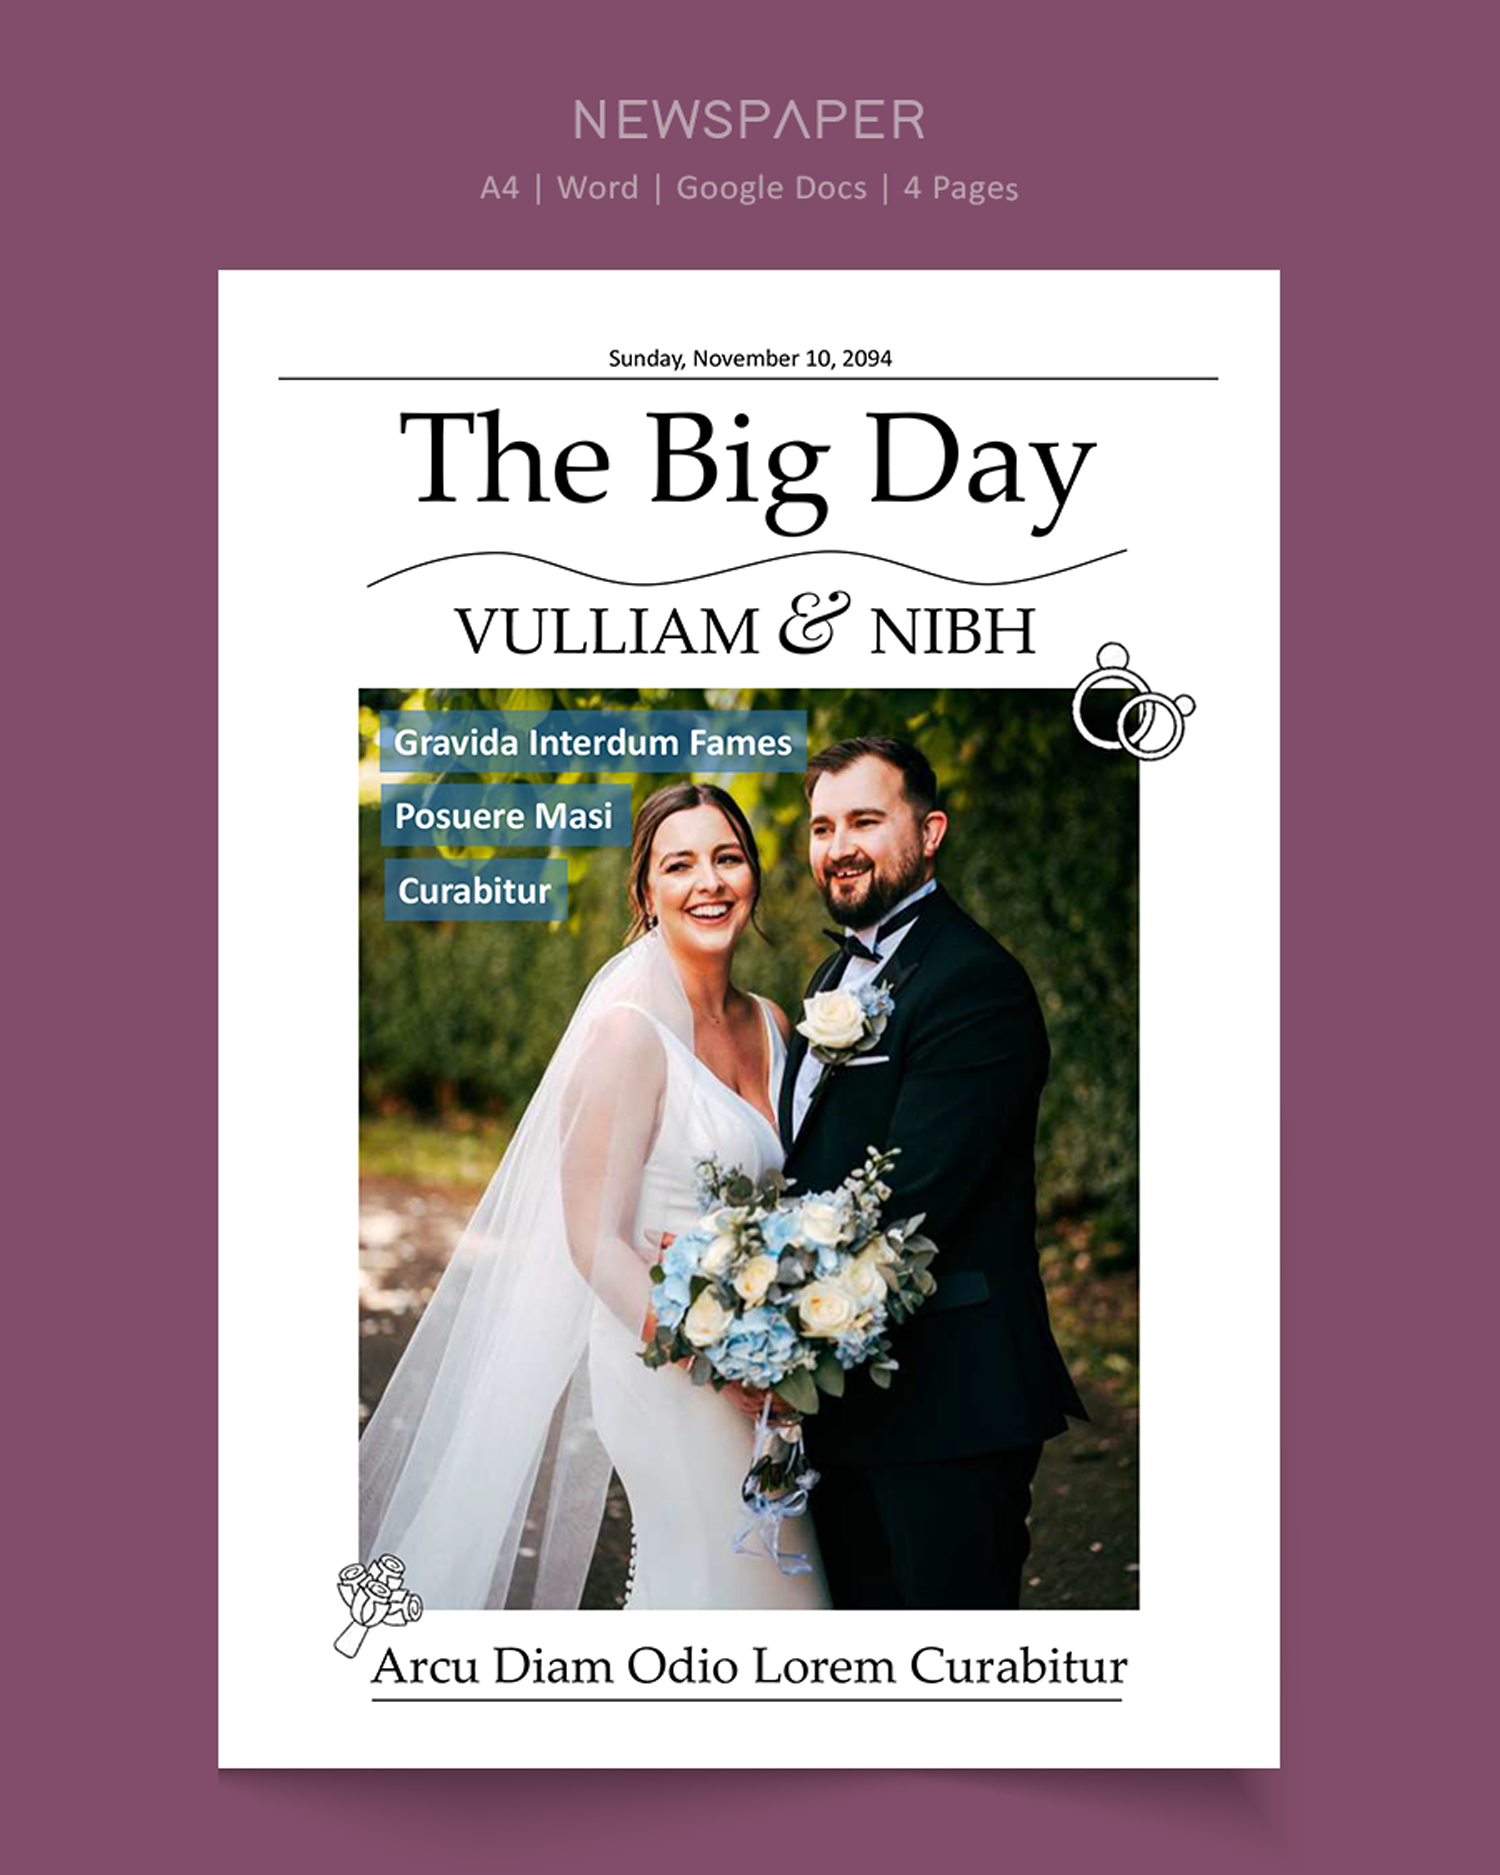 A4 Wedding Newspaper Template - Word, Google Docs